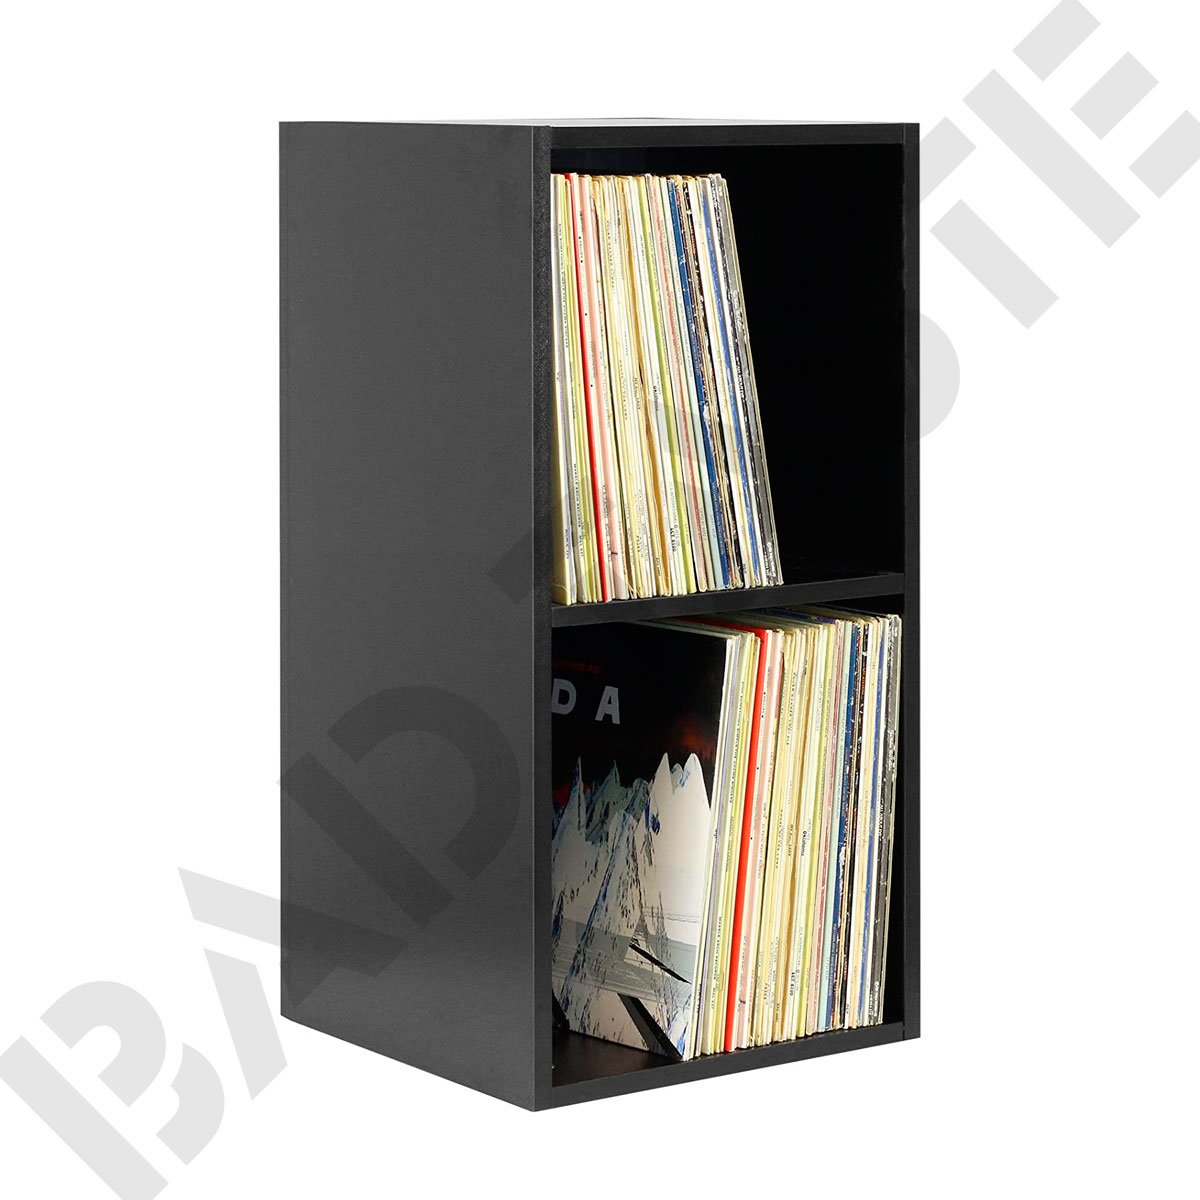 [Muebles] para almacenar discos de vinilo